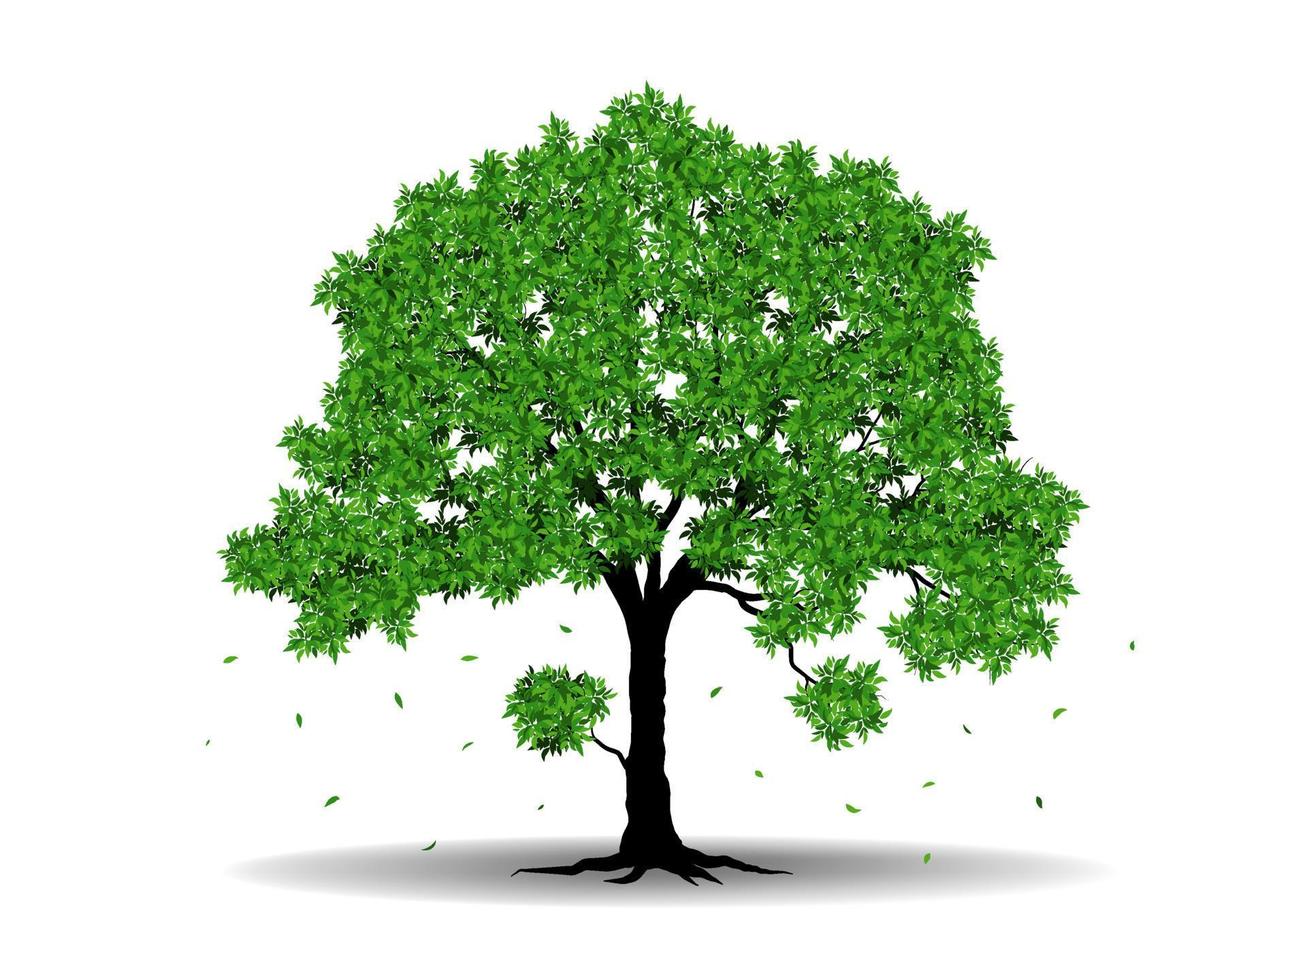 de groot boom met groen bladeren kijken mooi en verfrissende.boom en wortels logo concept. kan worden gebruikt voor uw werk. vector